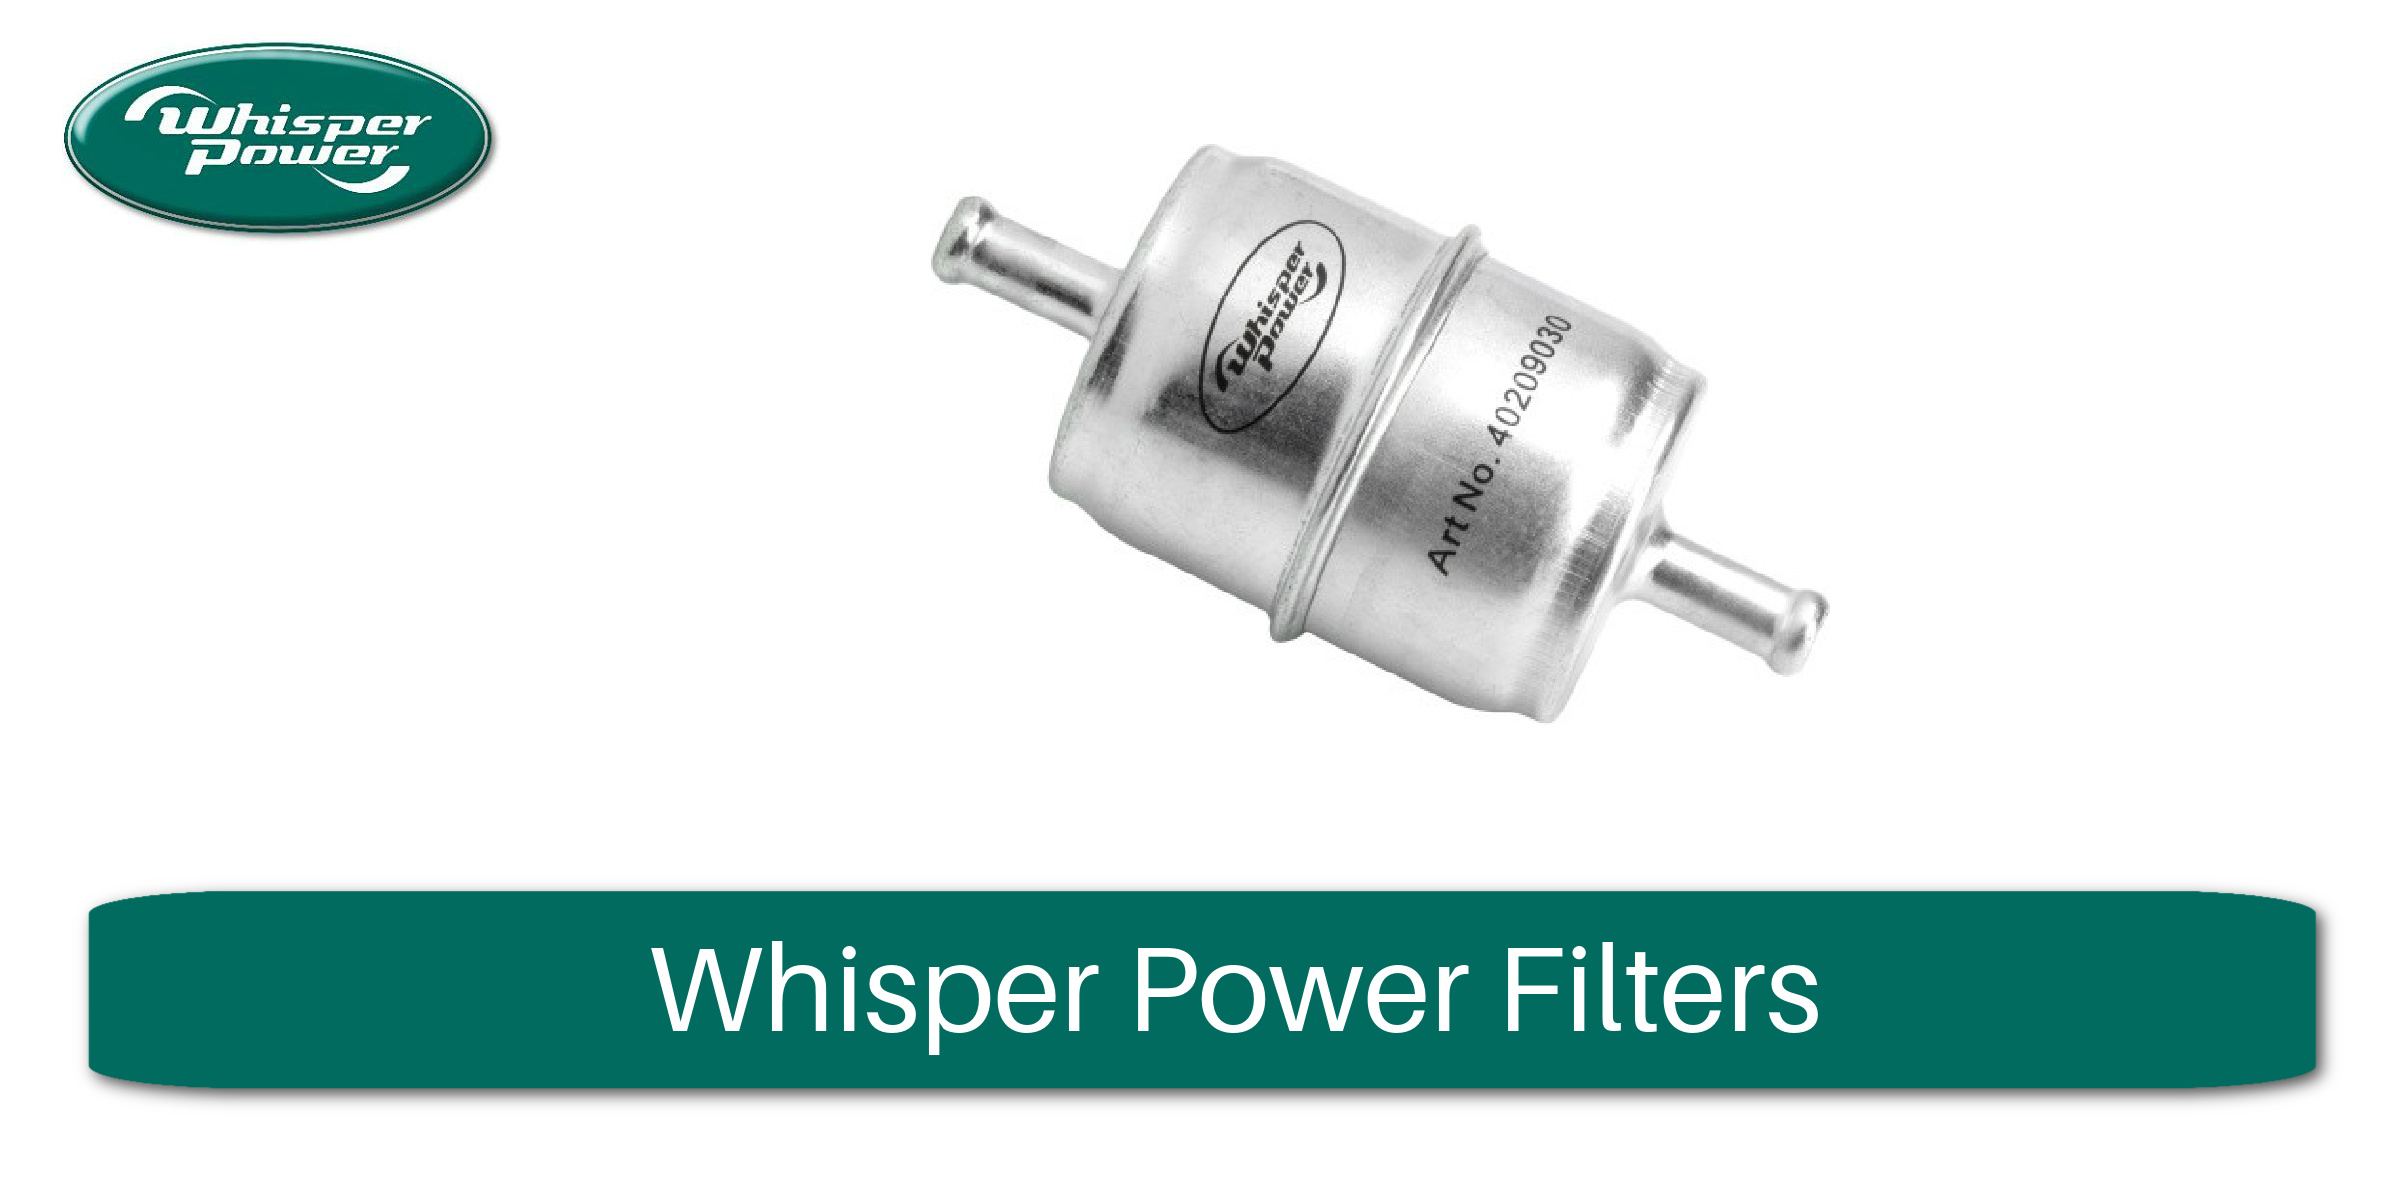 Whisper Power Filters